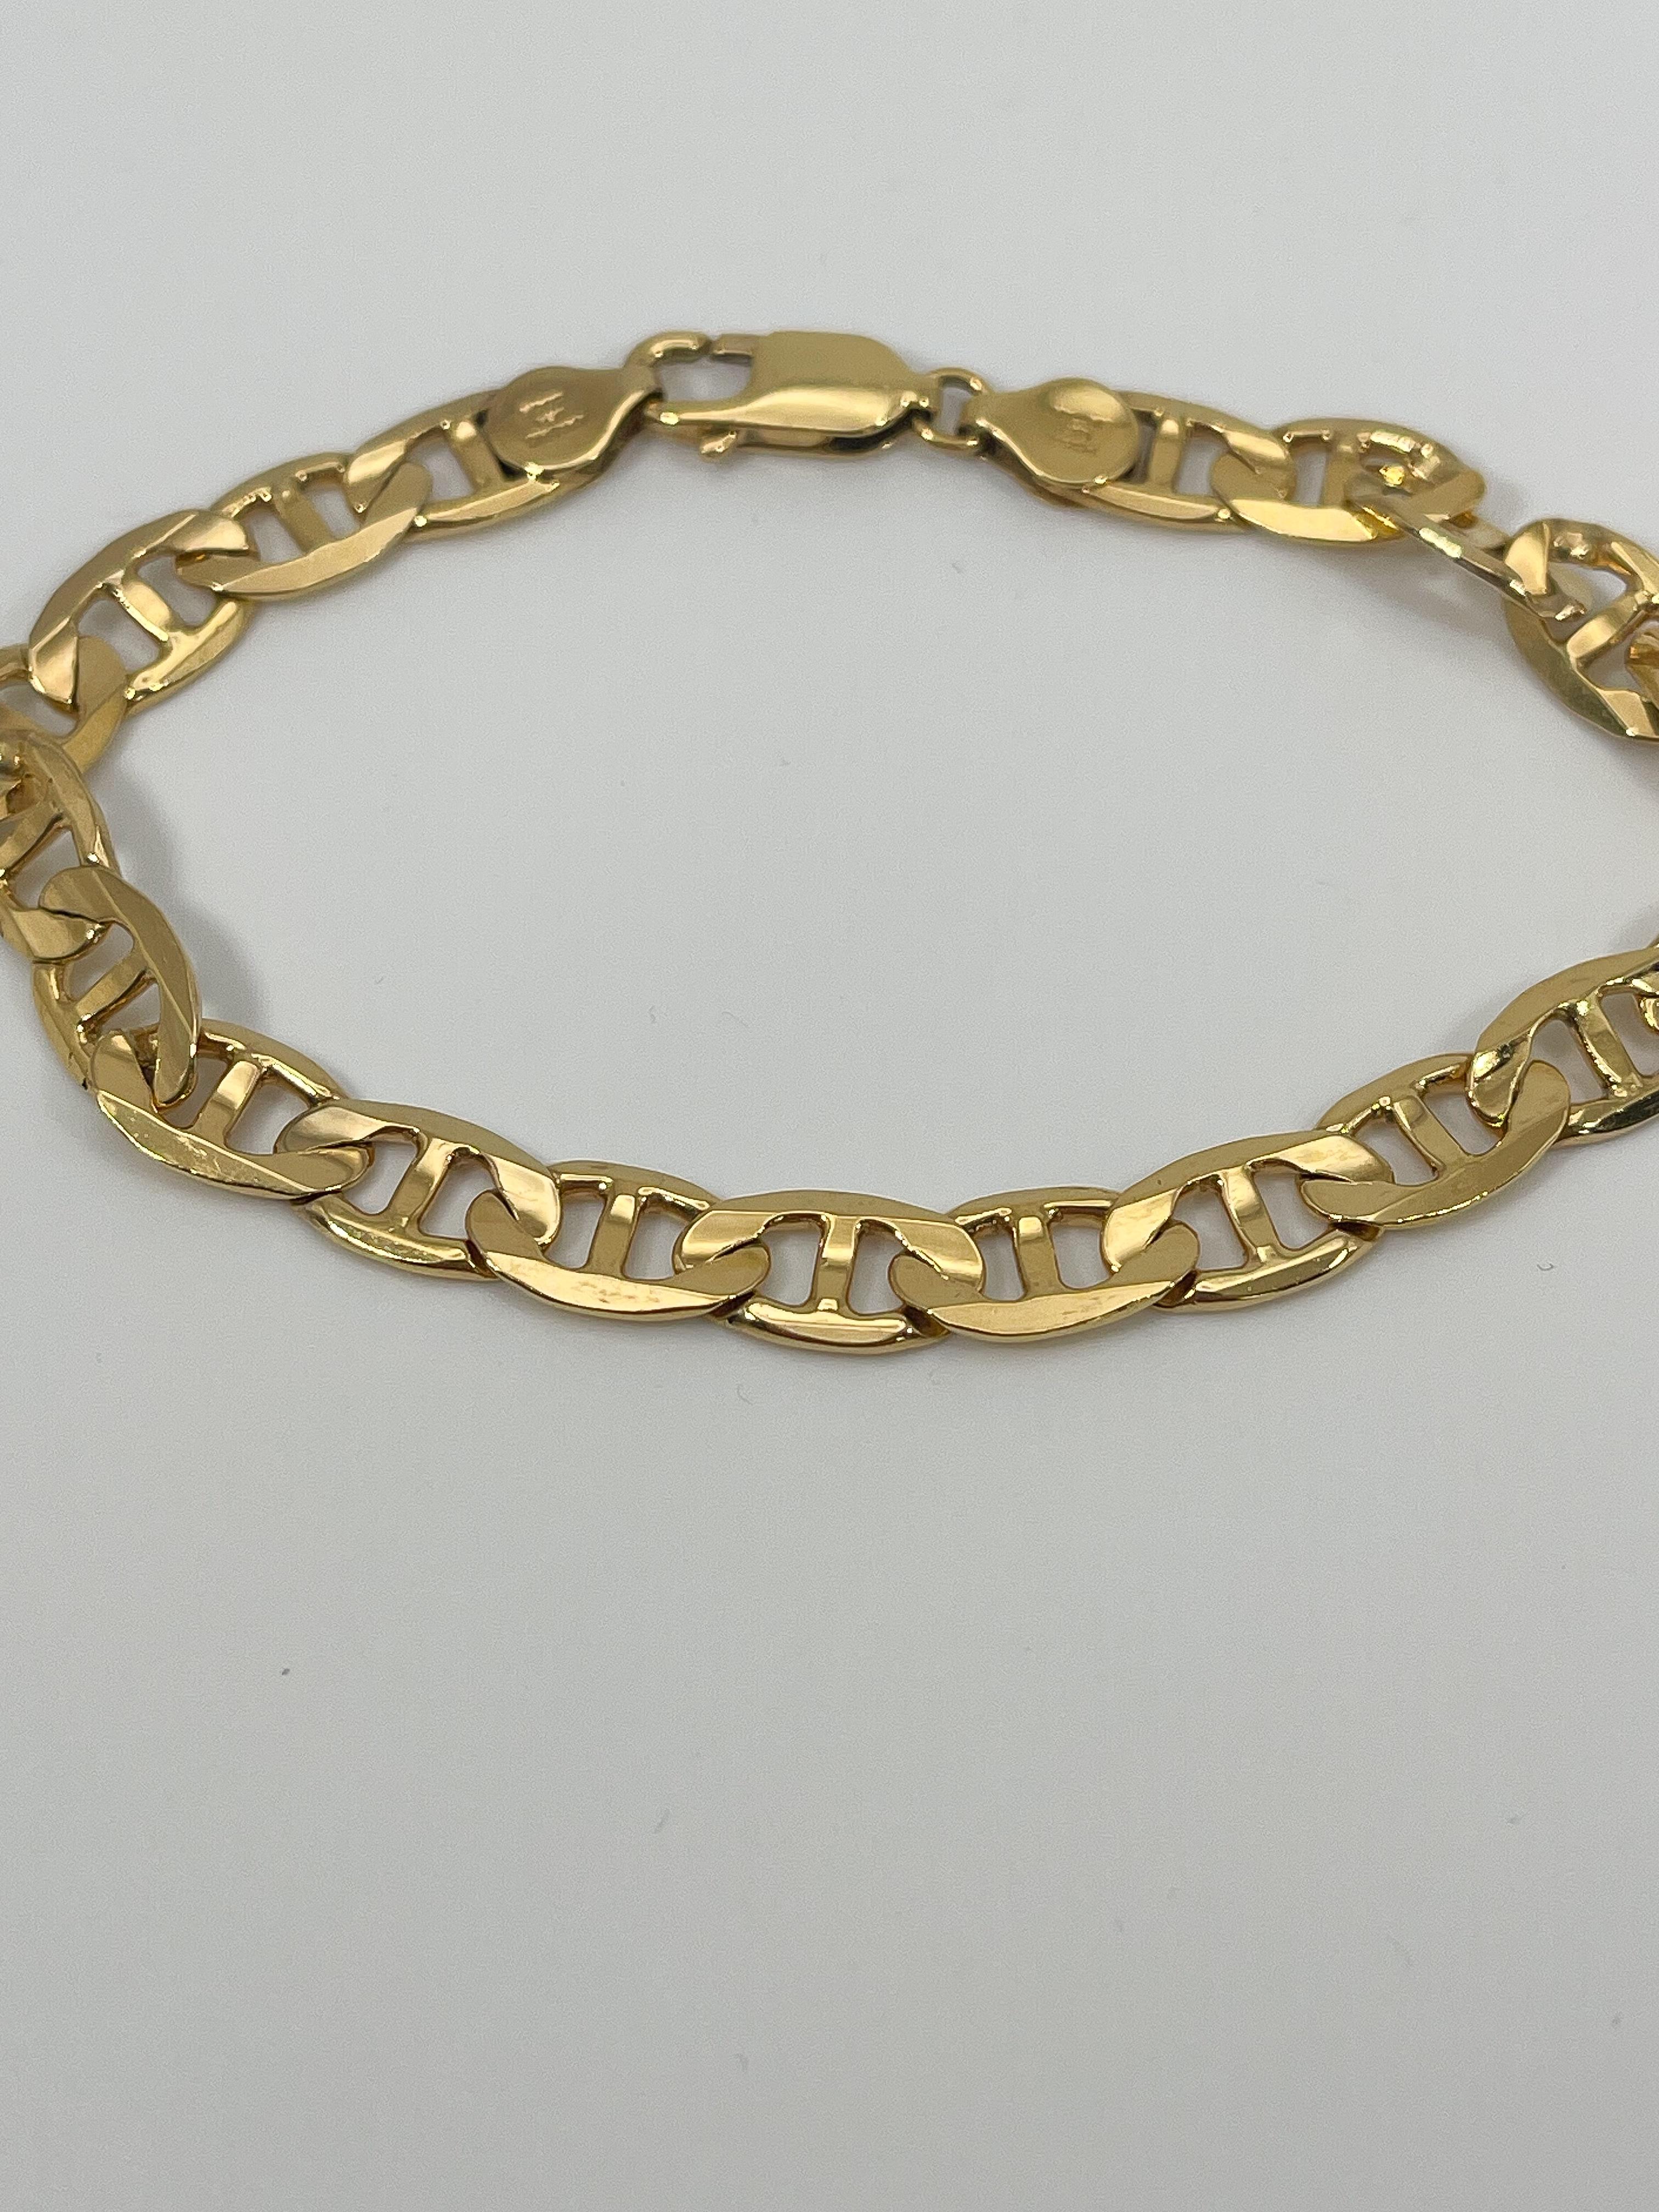 Bracelet d'ancre concave en or jaune 14k pour homme. La longueur de ce bracelet est de 9 pouces, sa largeur est de 7,6 mm, il est muni d'un fermoir à mousqueton pour l'ouvrir et le fermer, et son poids total est de 17,8 grammes.